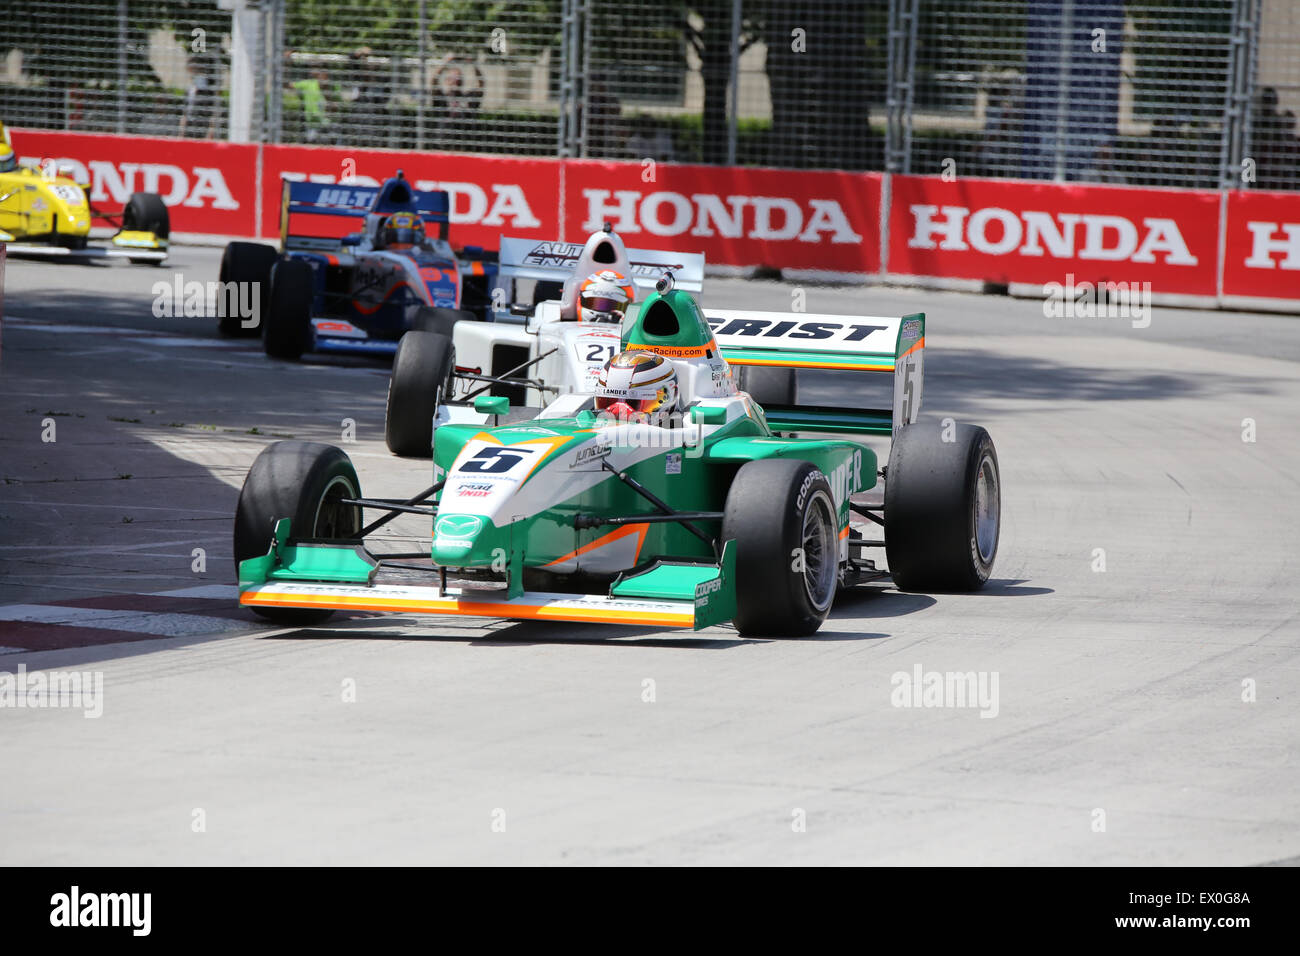 Honda Indy Toronto street car racing event Stock Photo